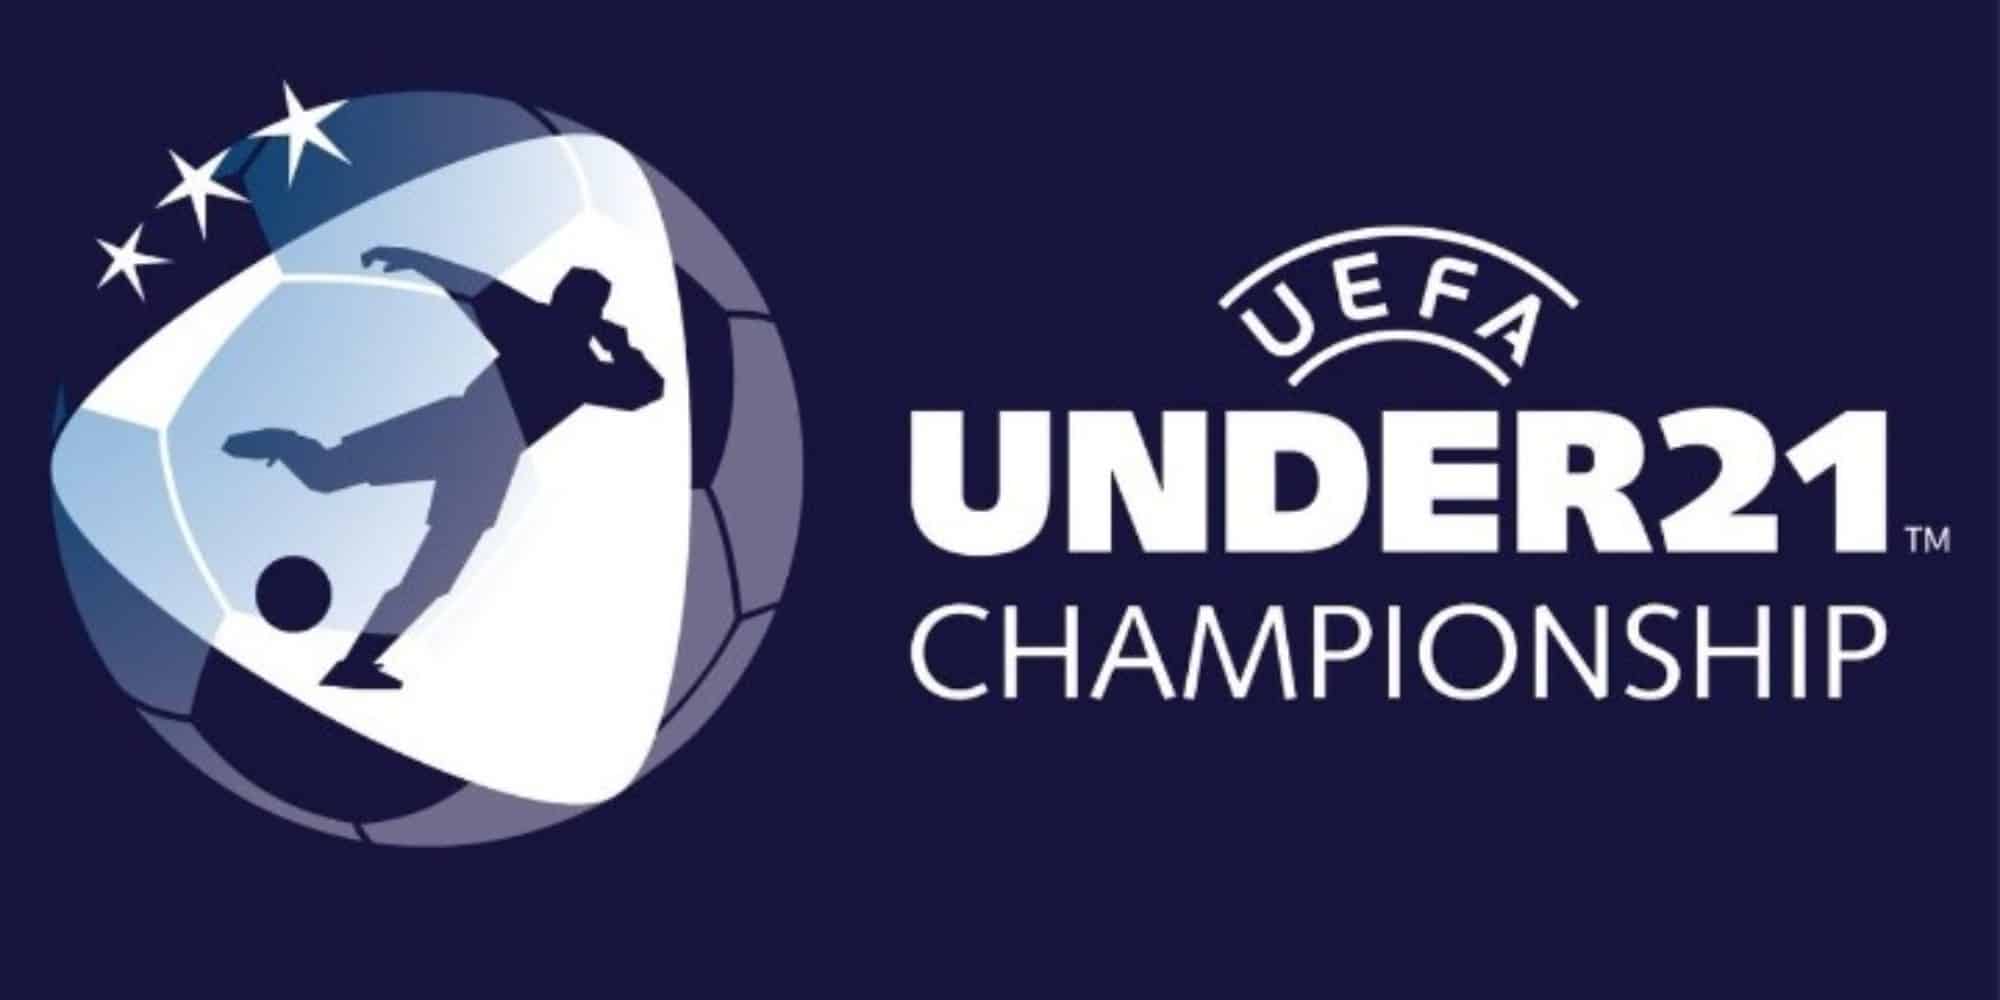 Το σήμα της UEFA για τους Under 21